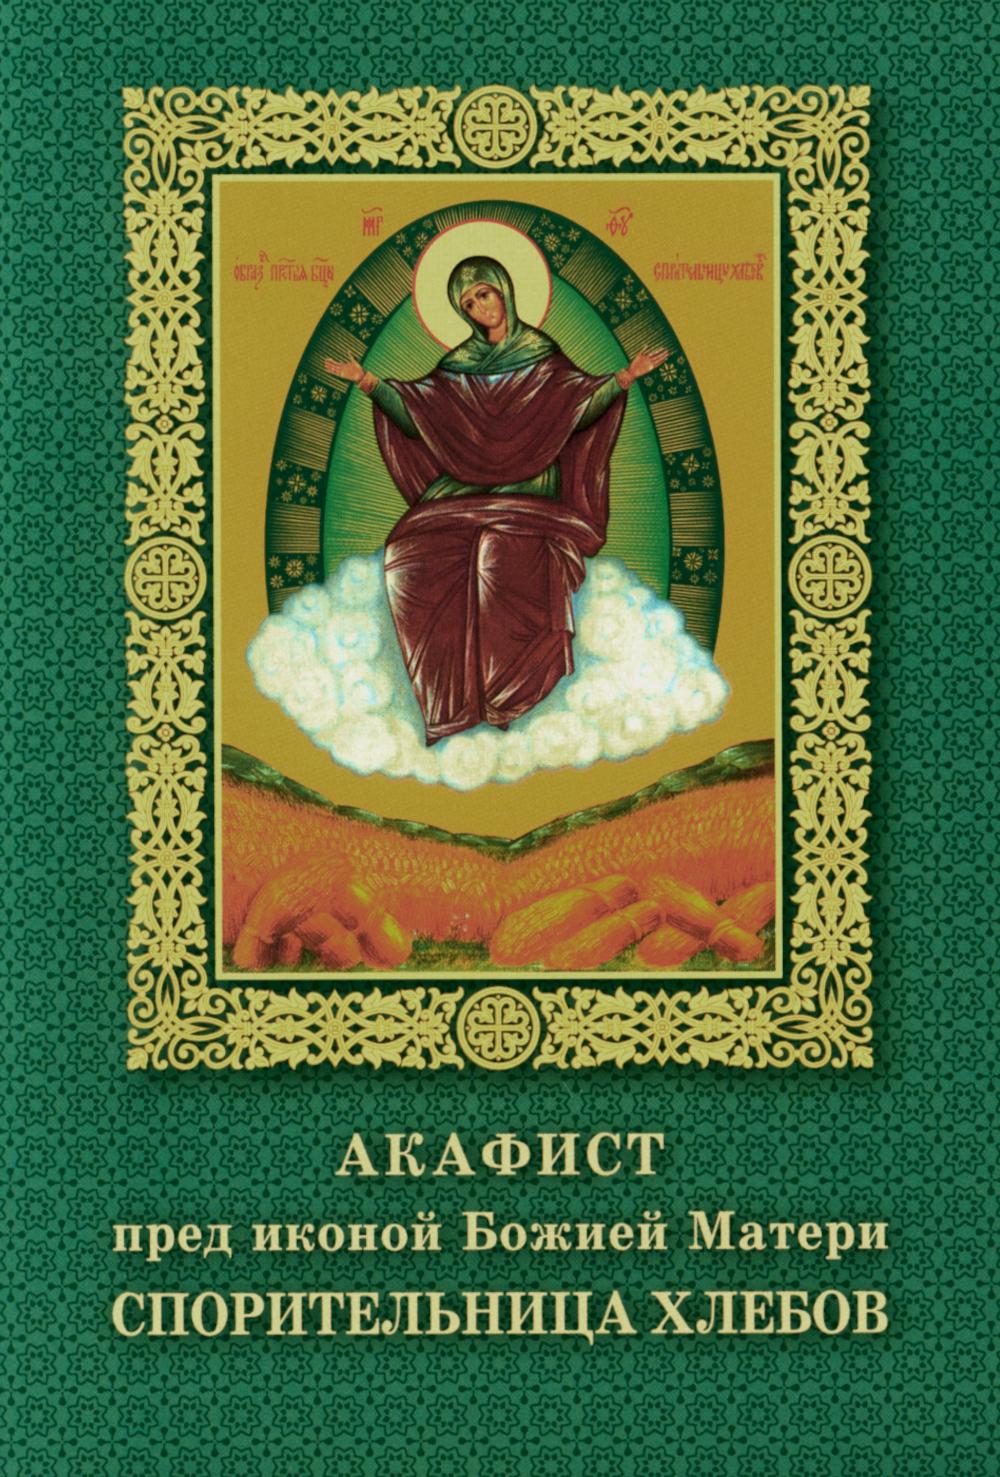 Акафист пред иконой Божией Матери Спорительница хлебов